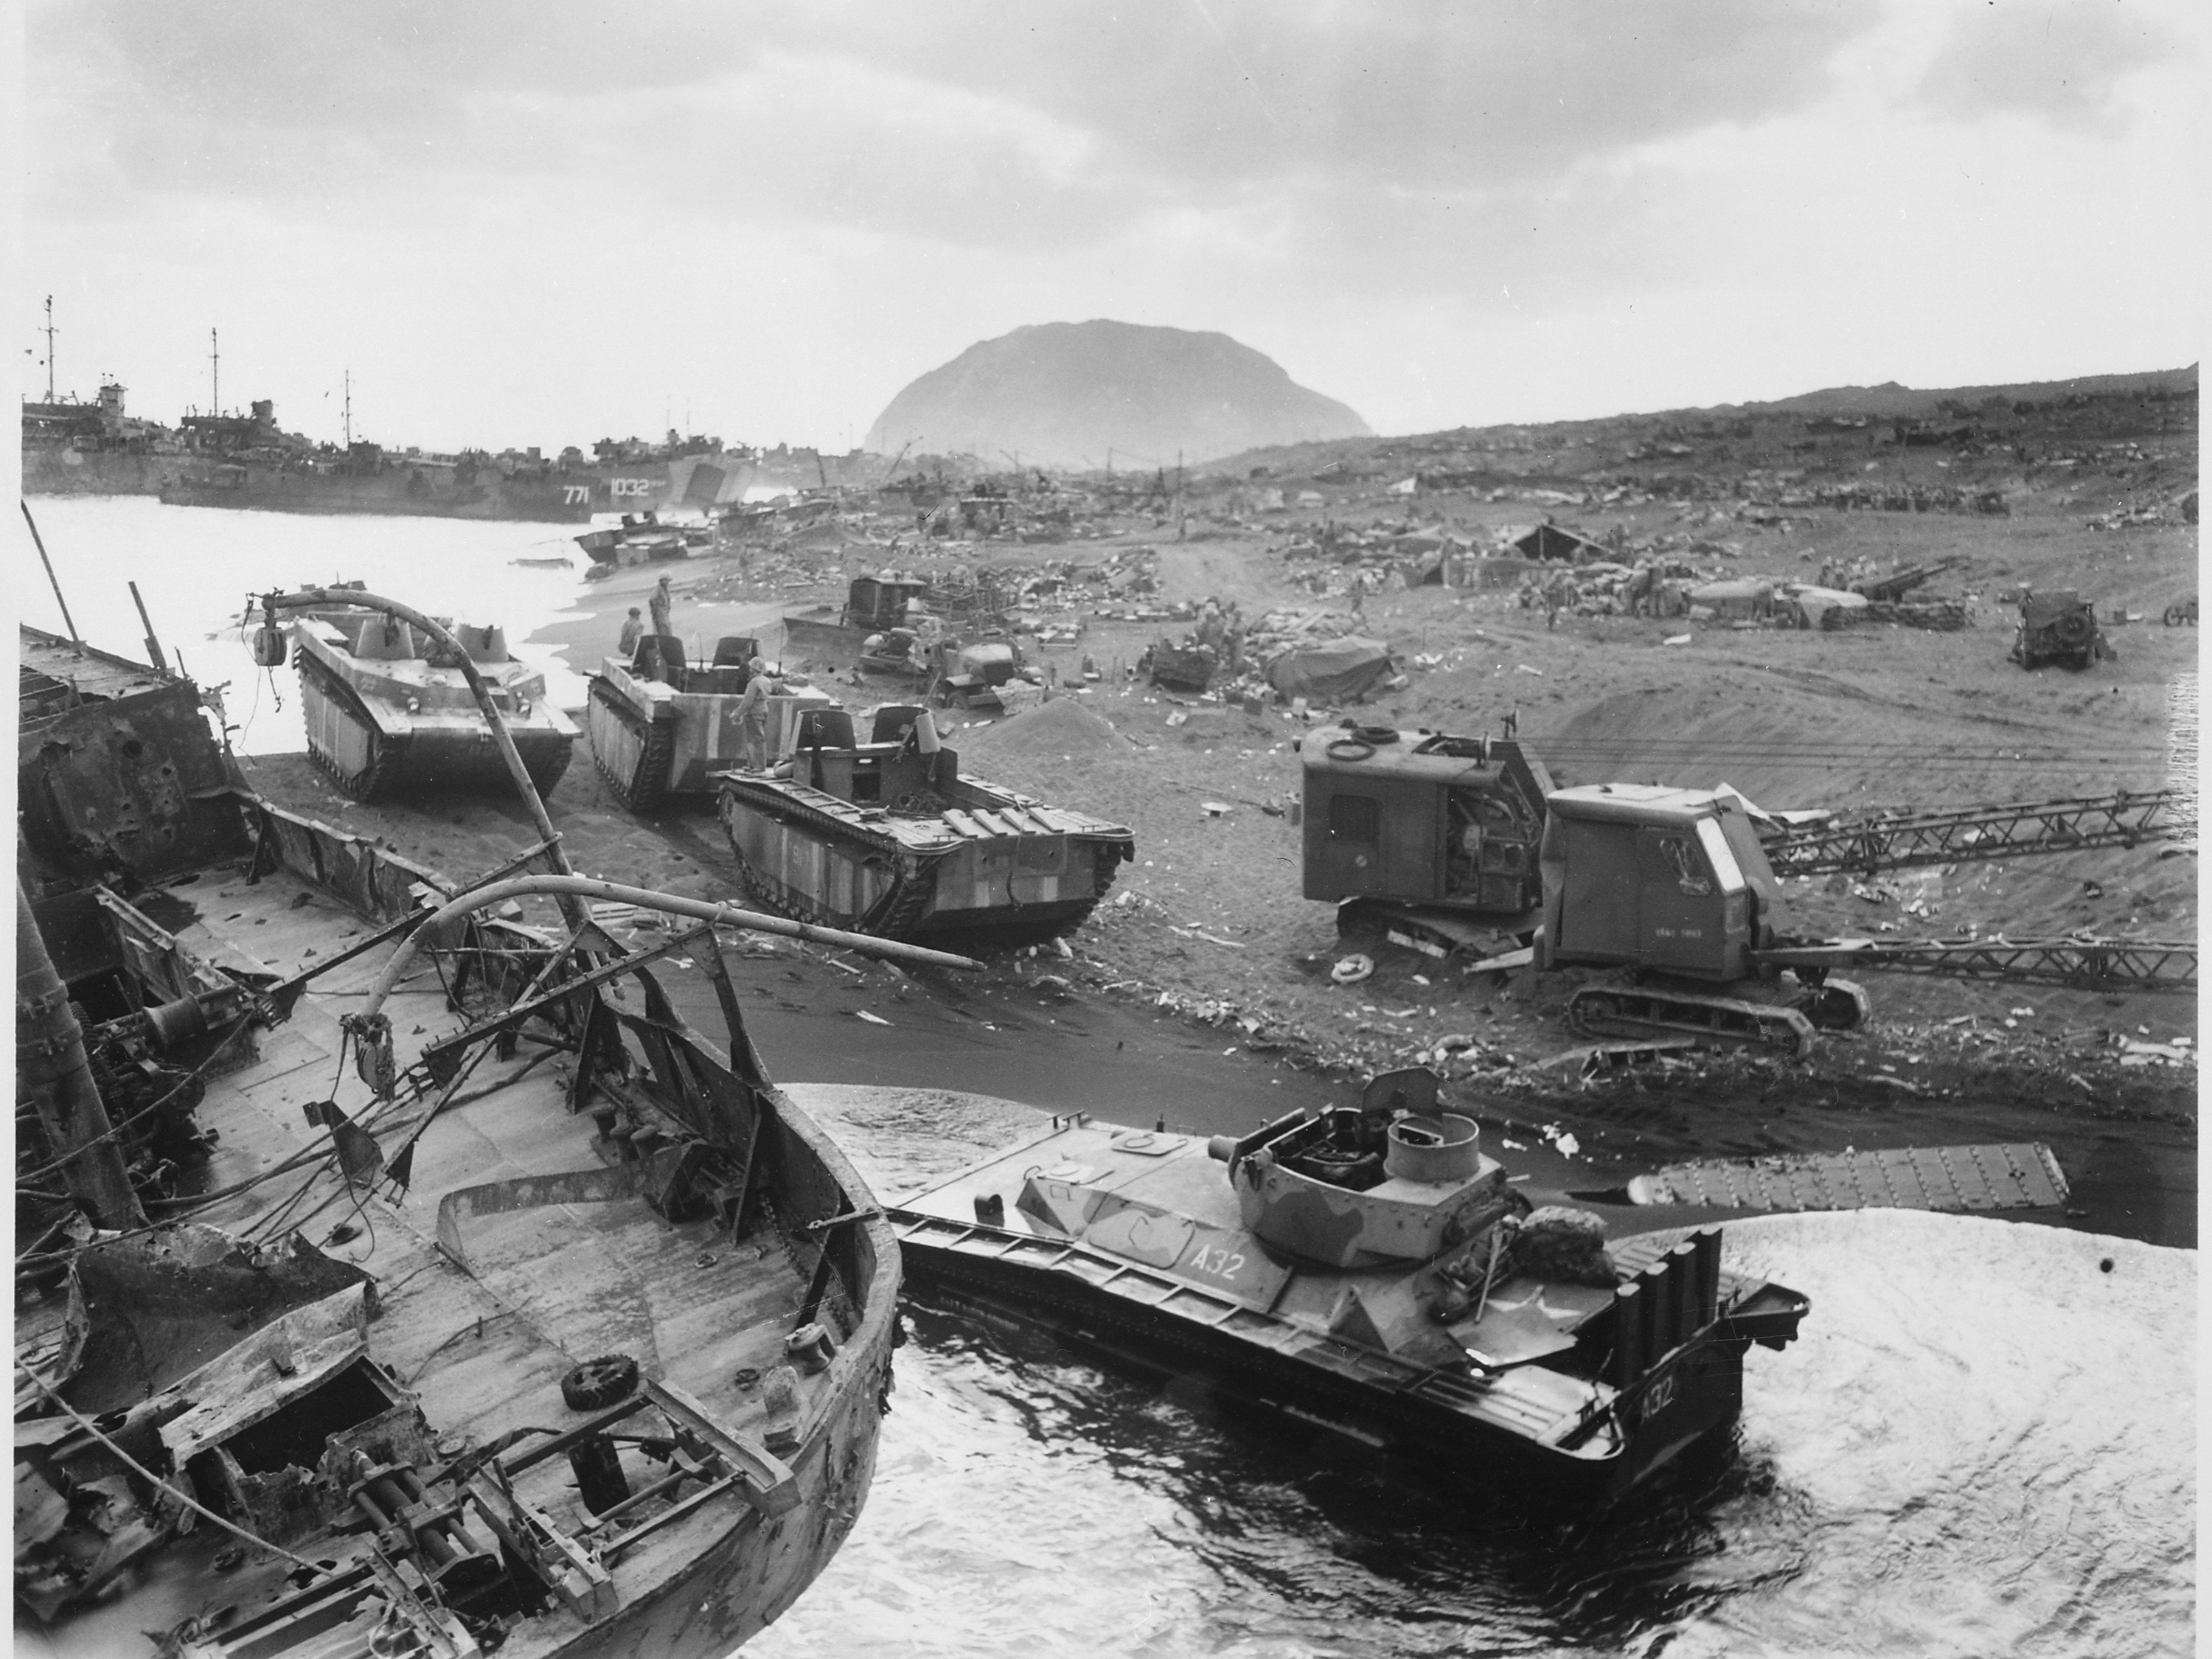 Military Battle Of Iwo Jima HD Wallpaper | Background Image